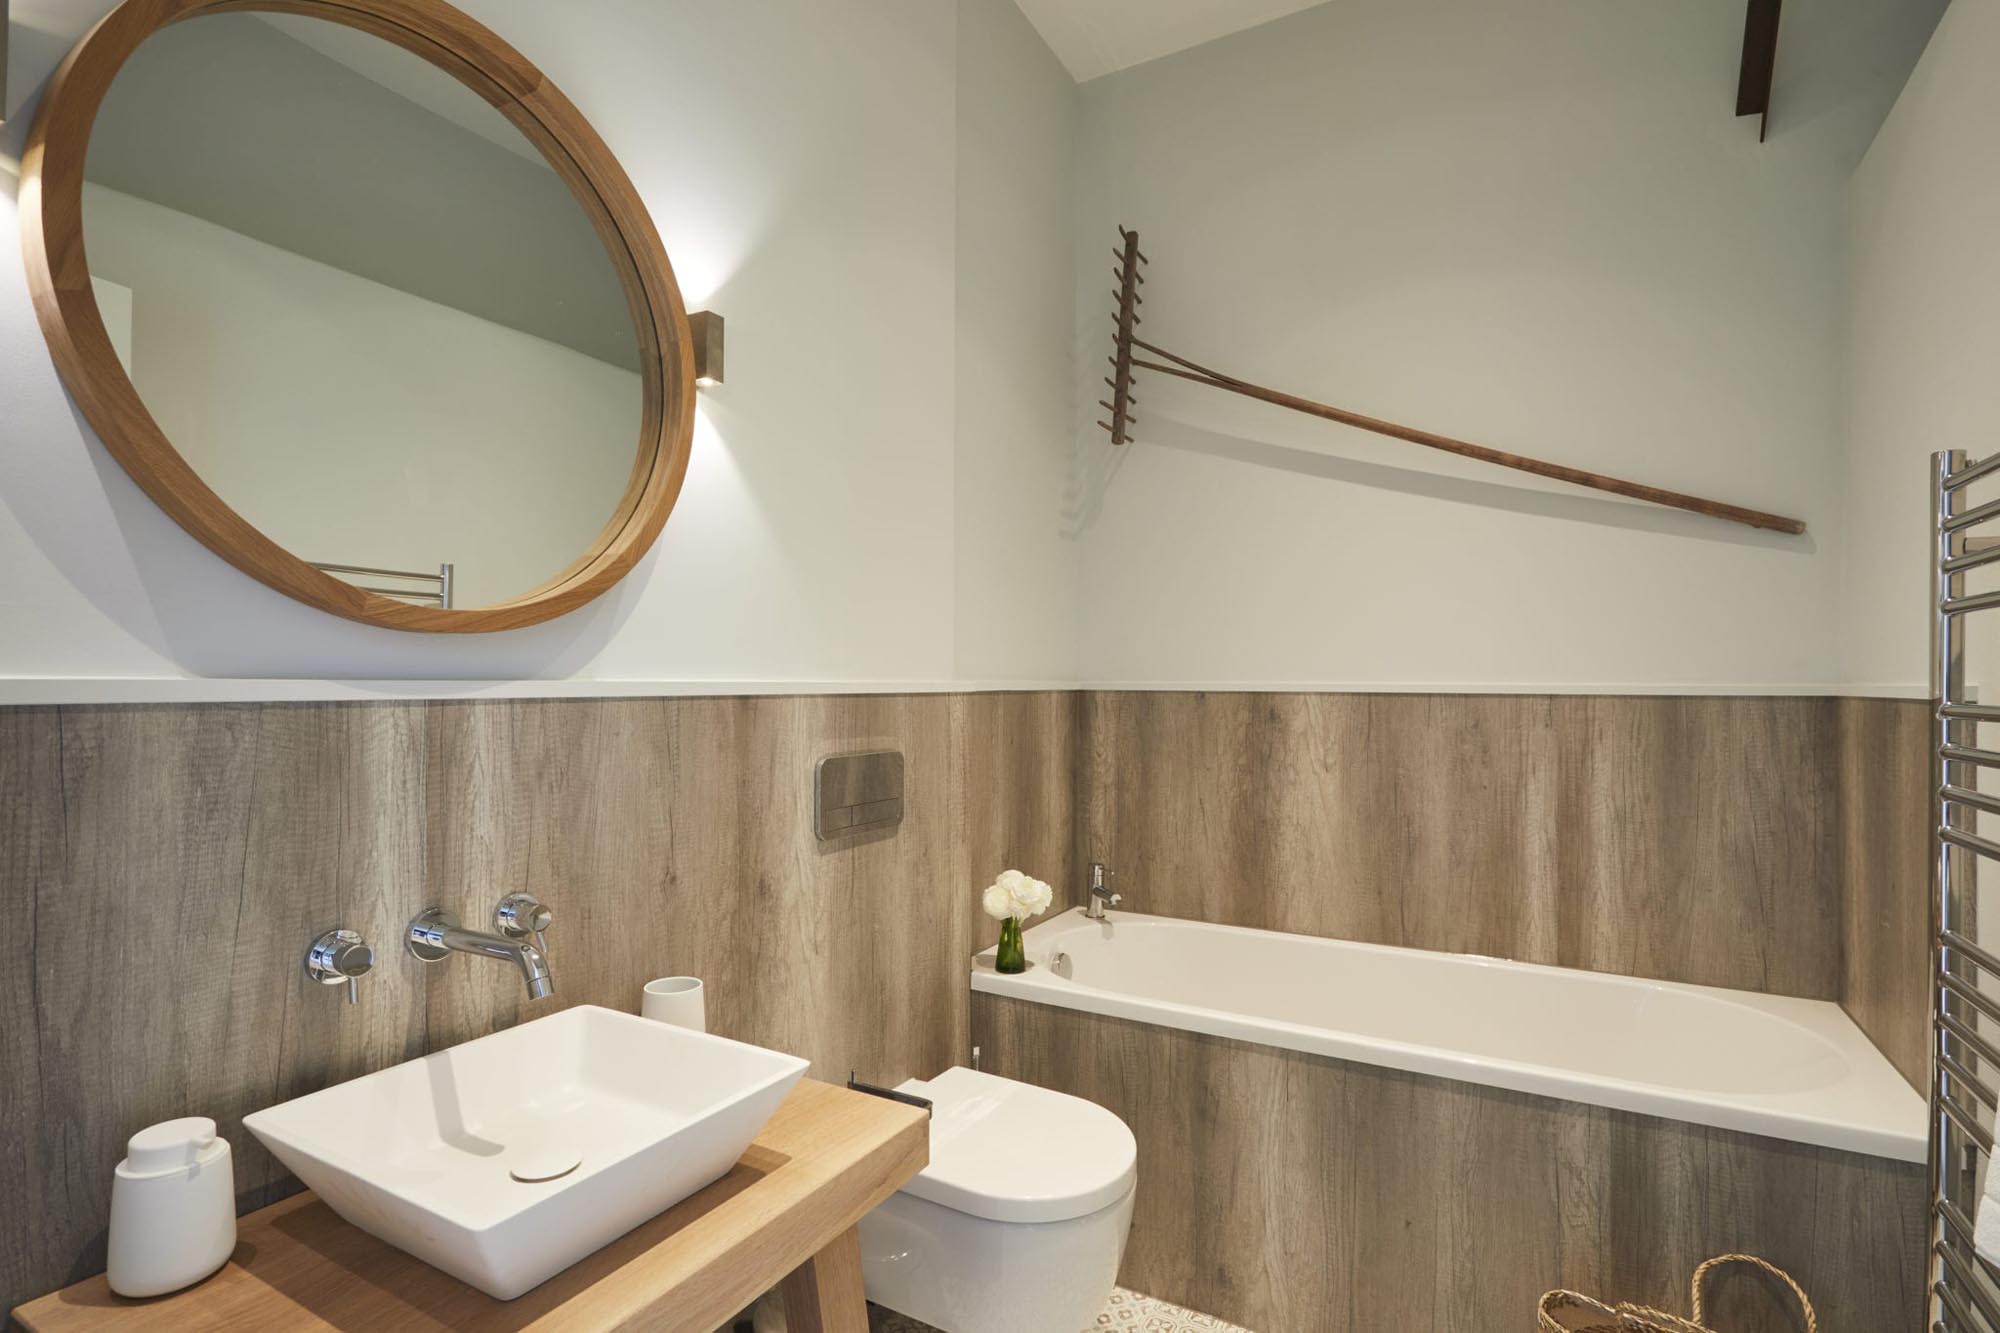 Bull Pen barn conversion en suite bathroom with round mirror